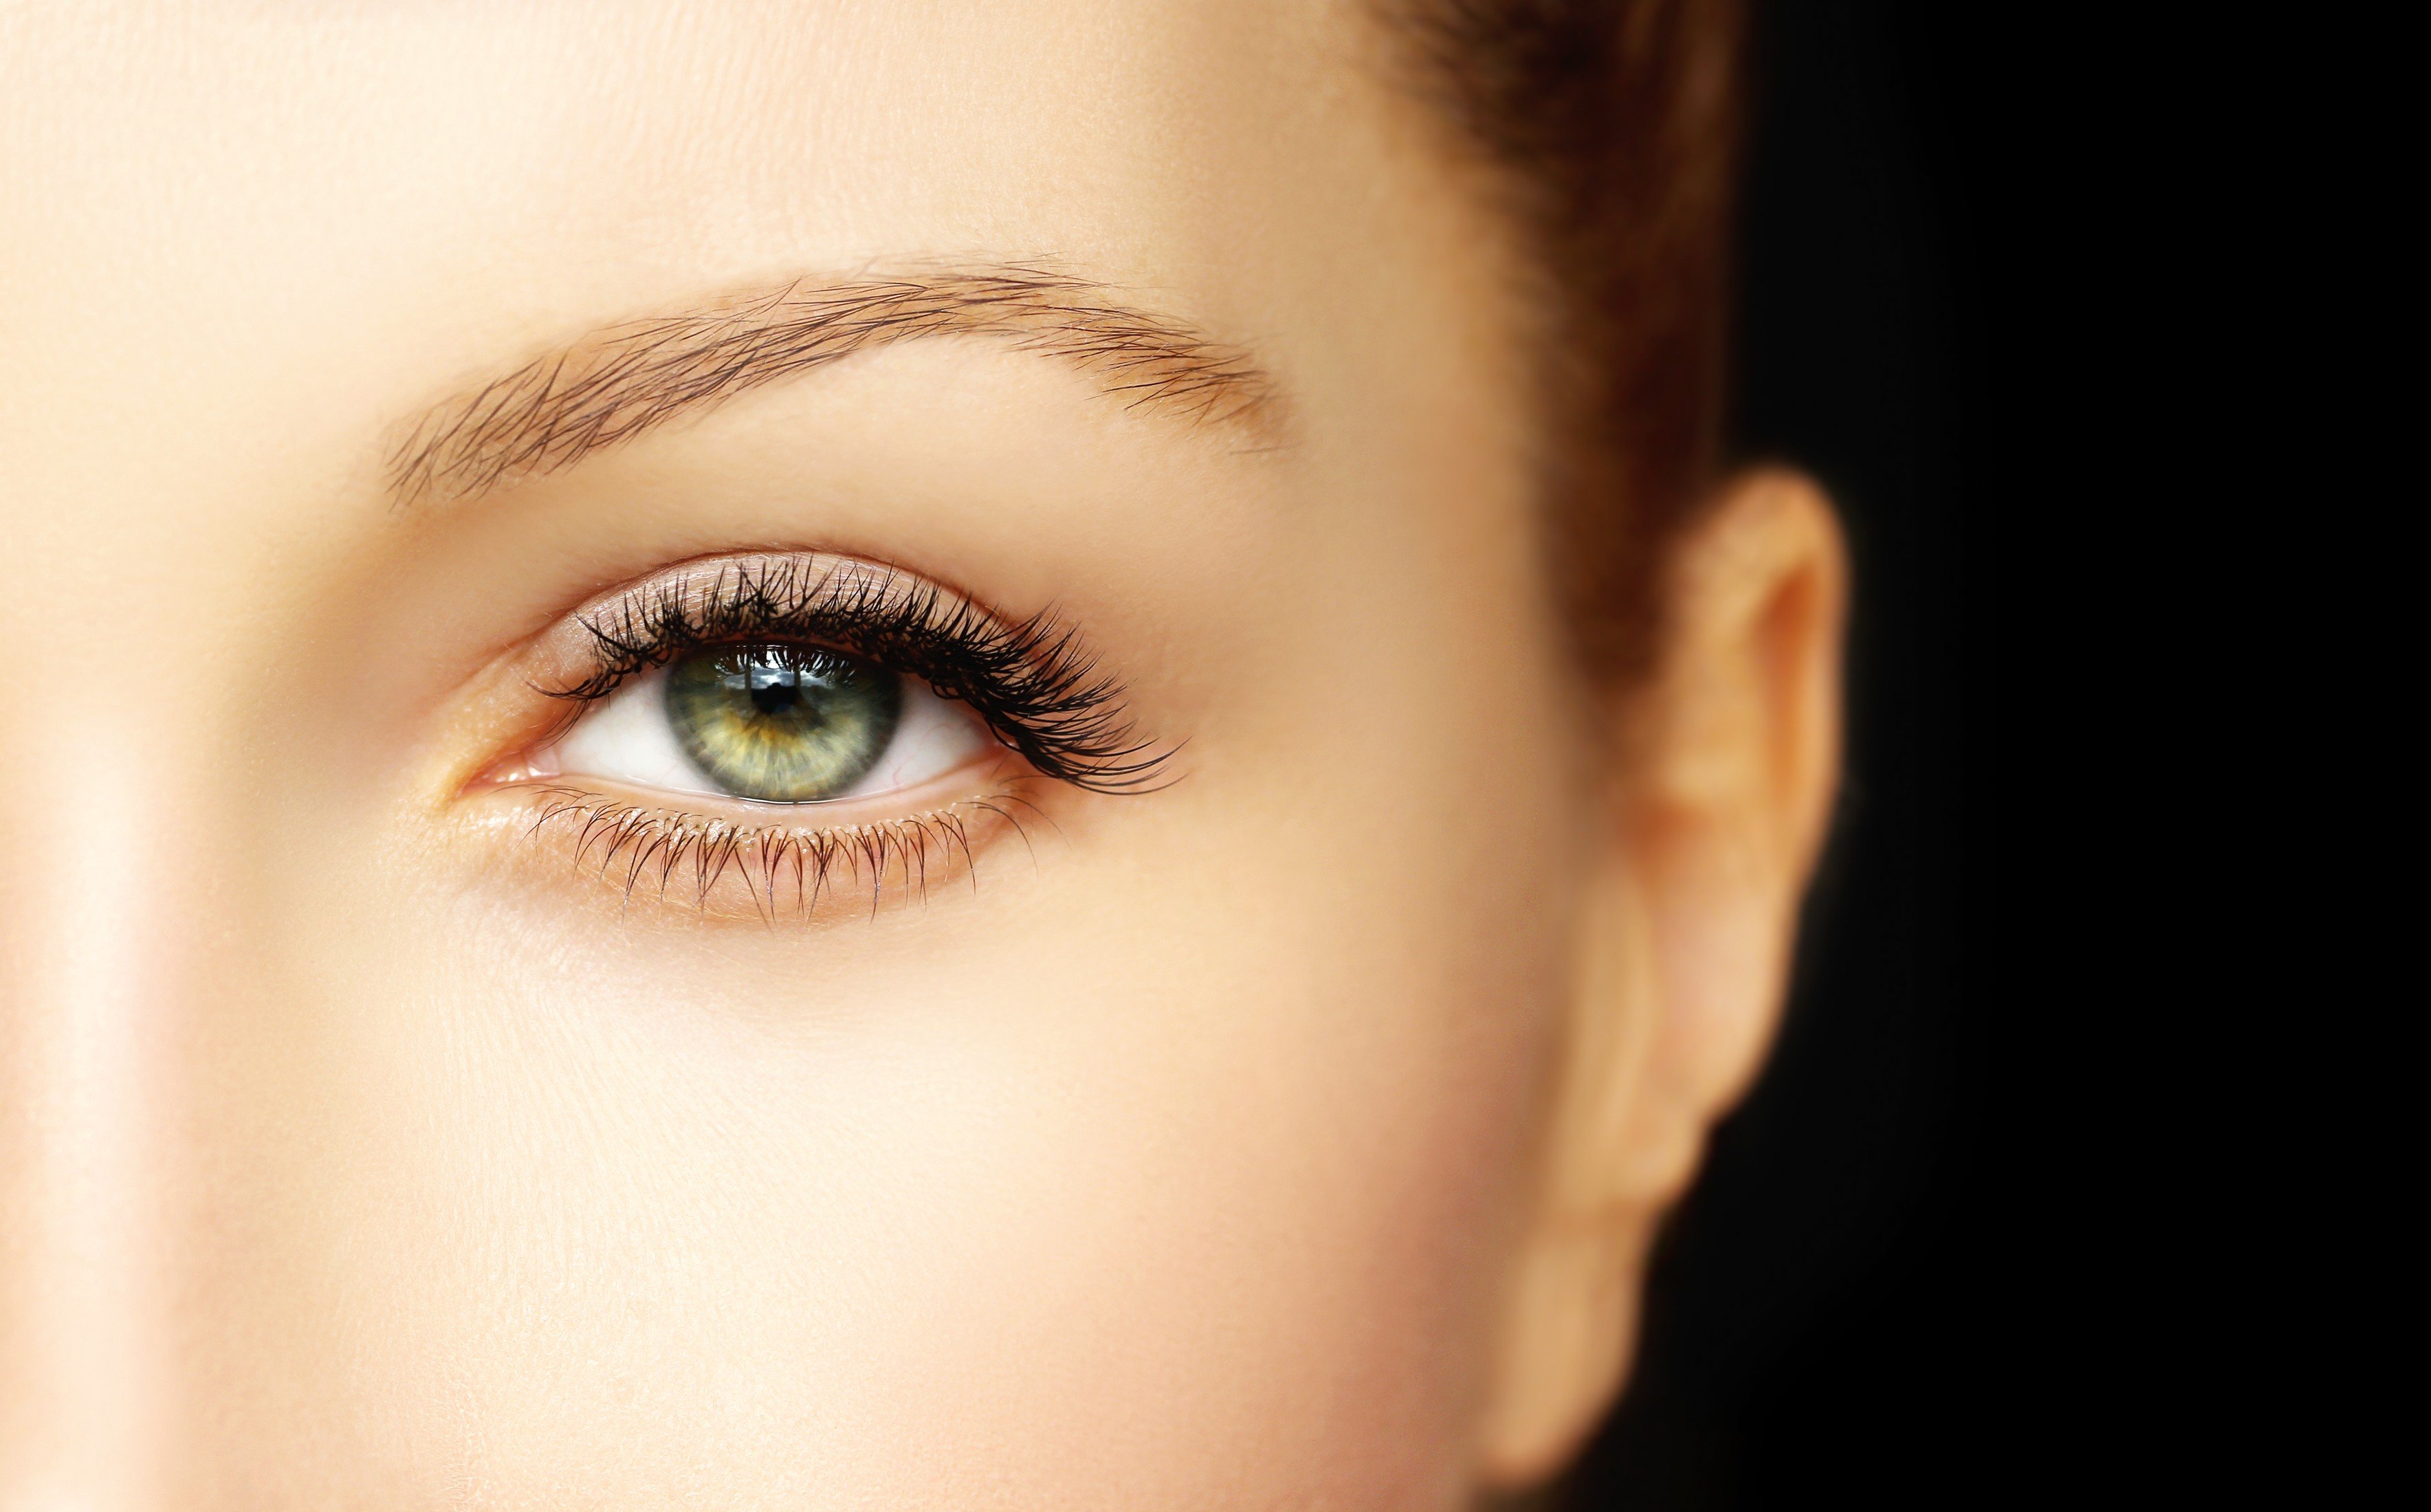 Tipps & Tricks für schöne Augenbrauen